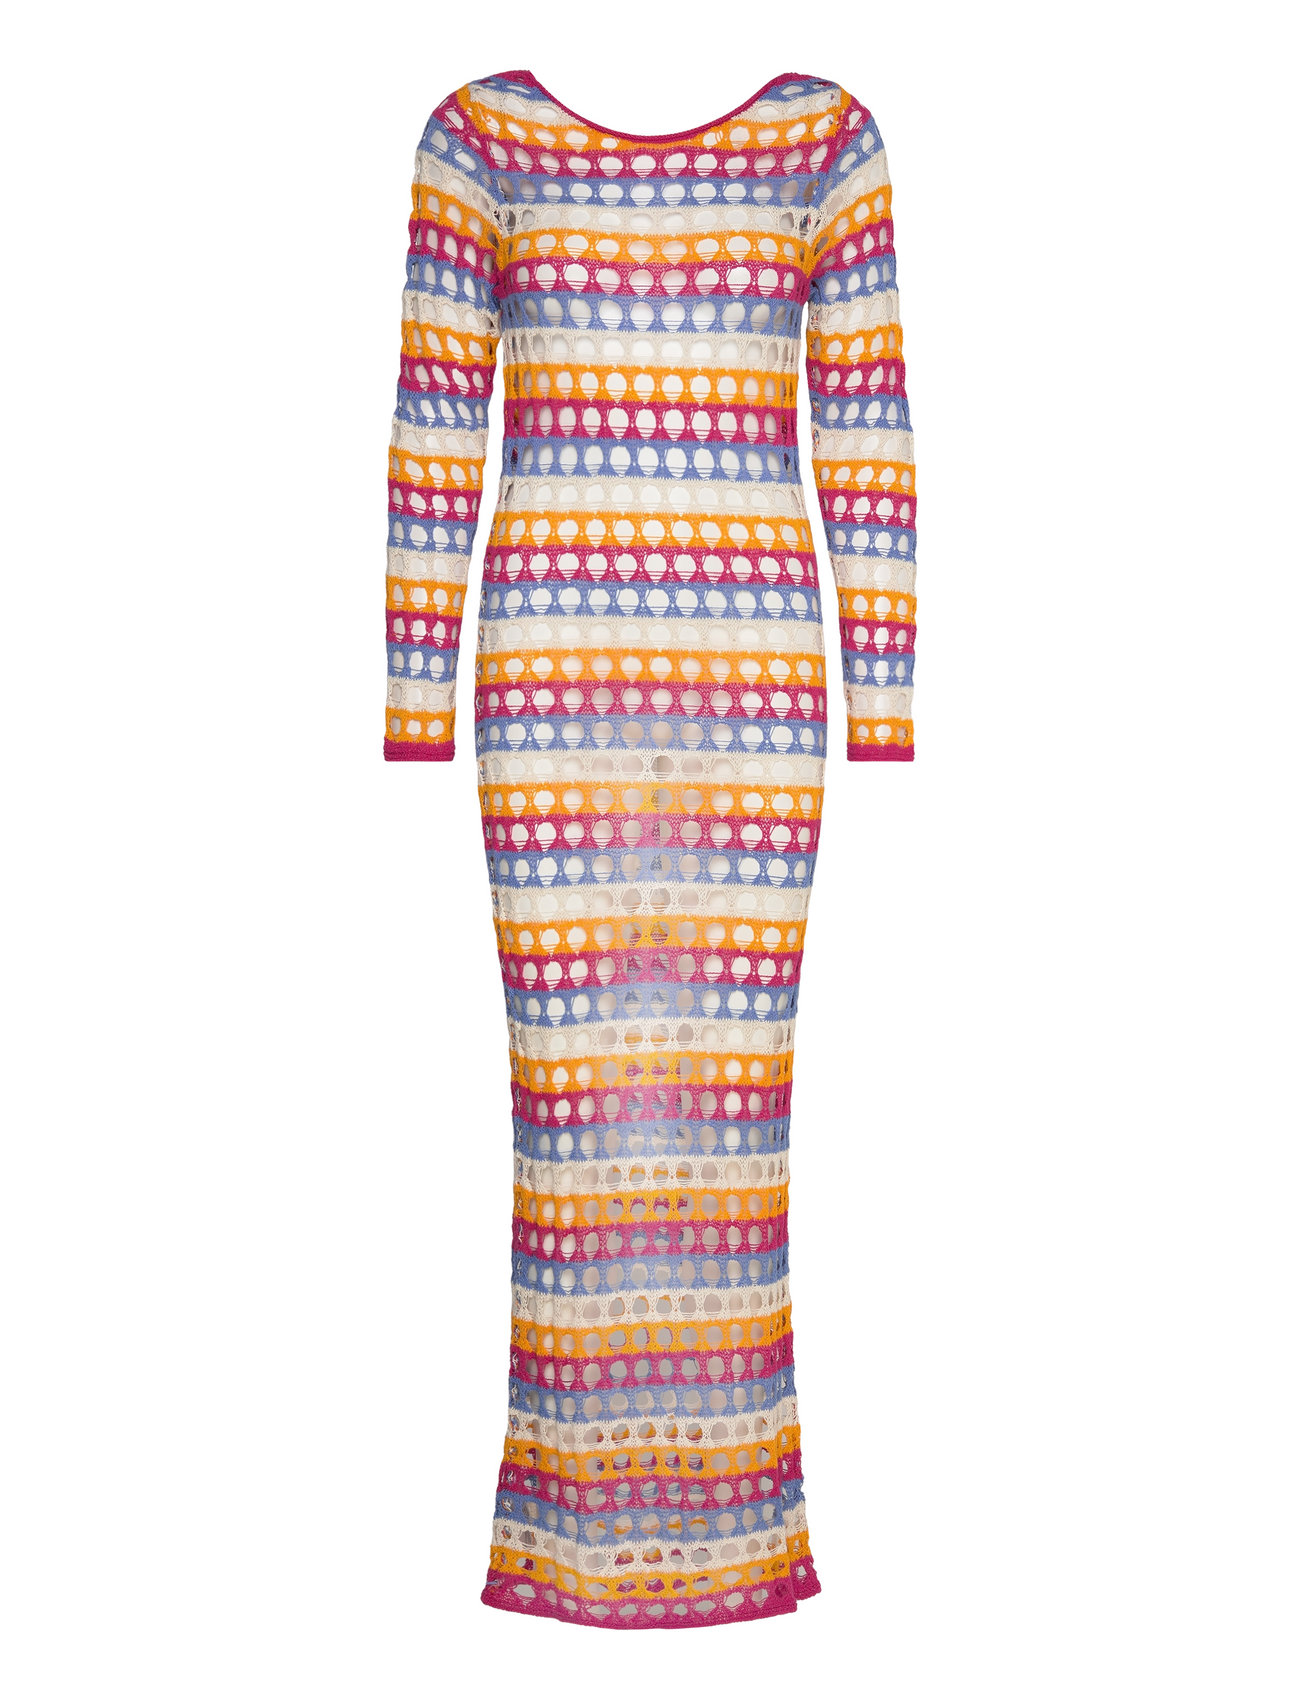 Multi-Coloured Crochet Dress Maxiklänning Festklänning Multi/patterned Mango